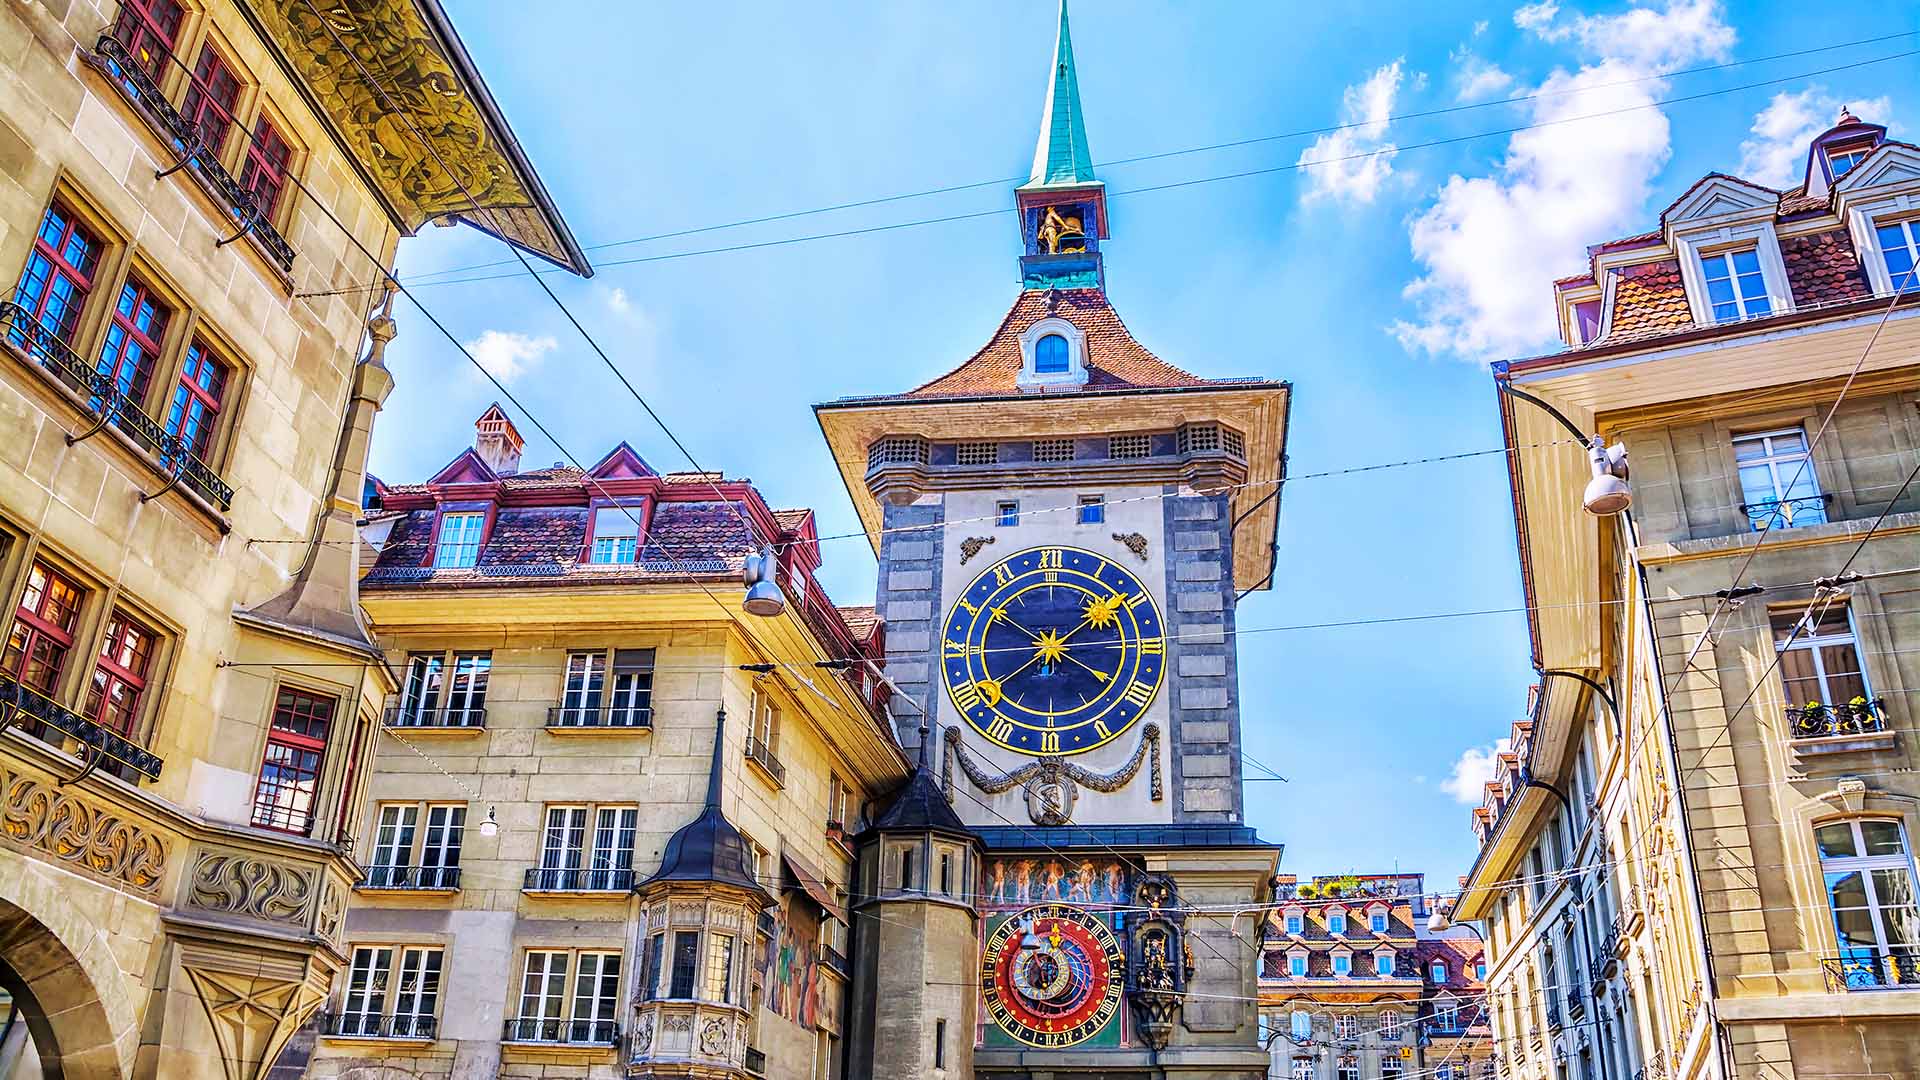 Bern clock tower, Switzerland